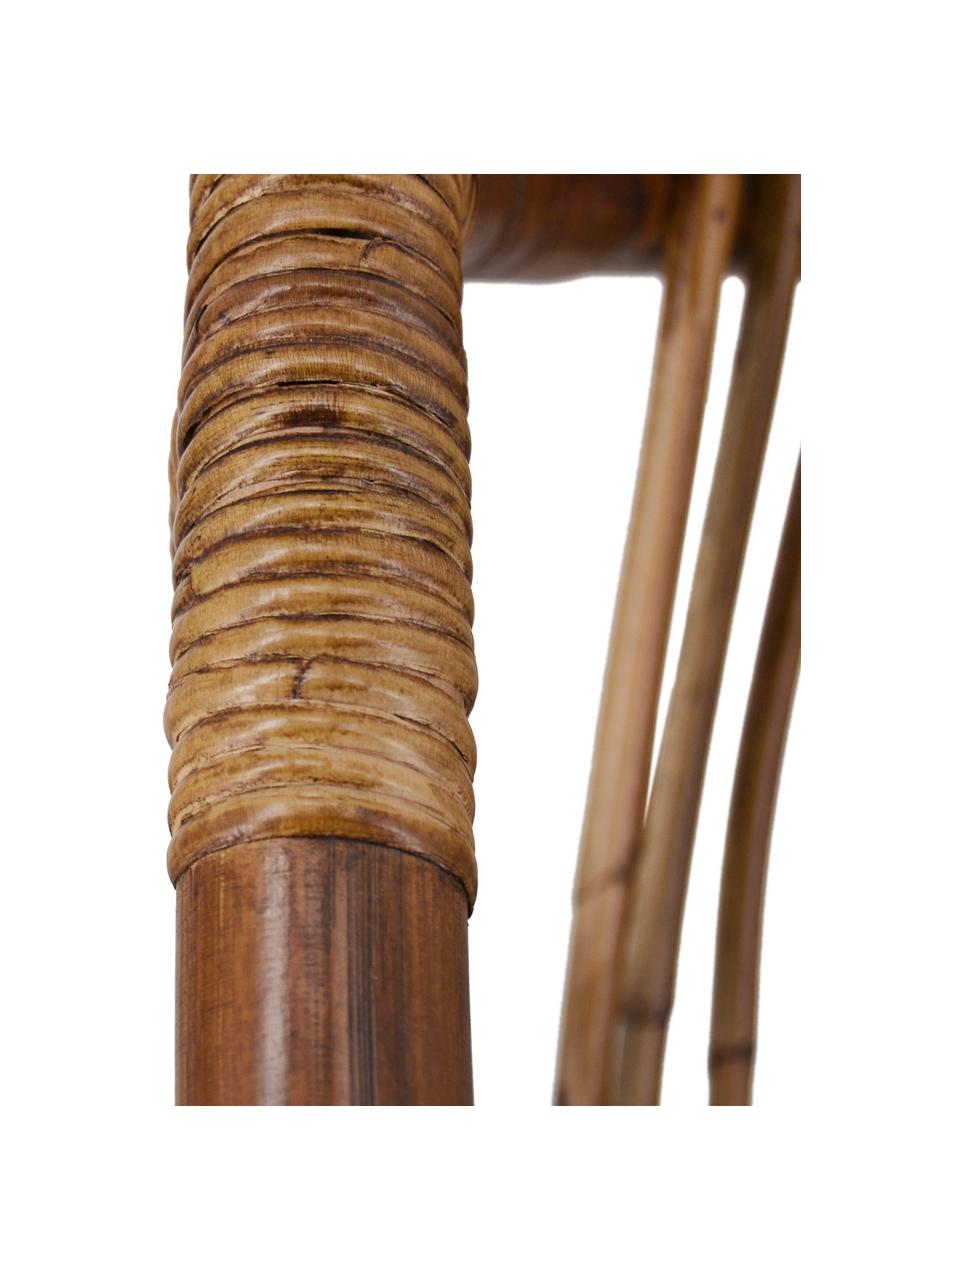 Kreslo z dreva a bambusu Bambu, Hnedá